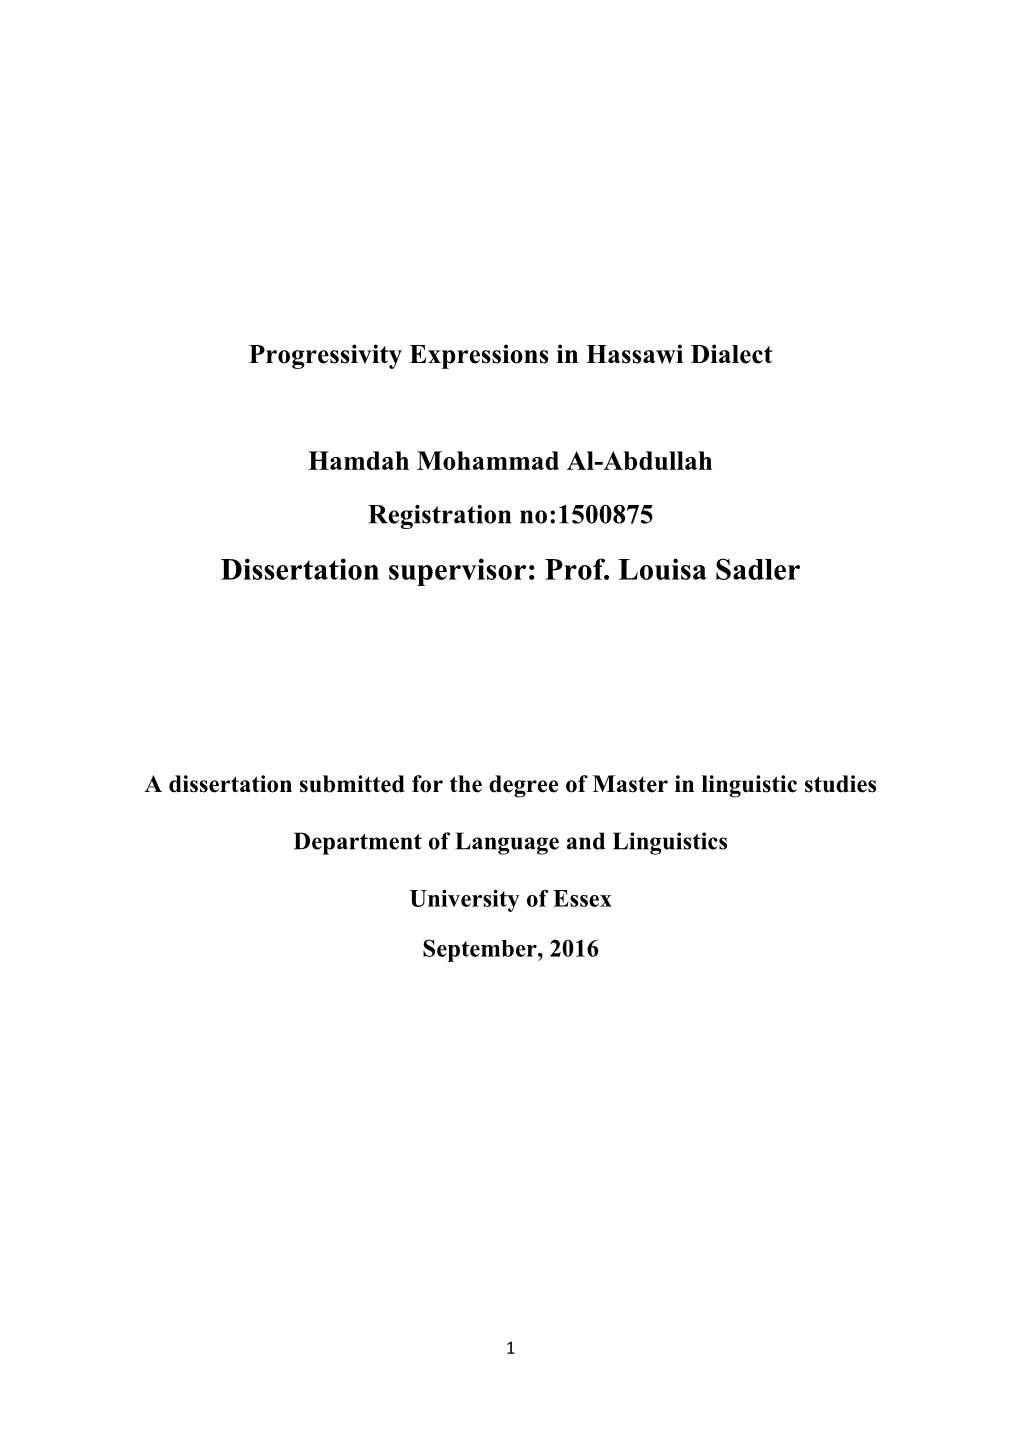 Dissertation Supervisor: Prof. Louisa Sadler